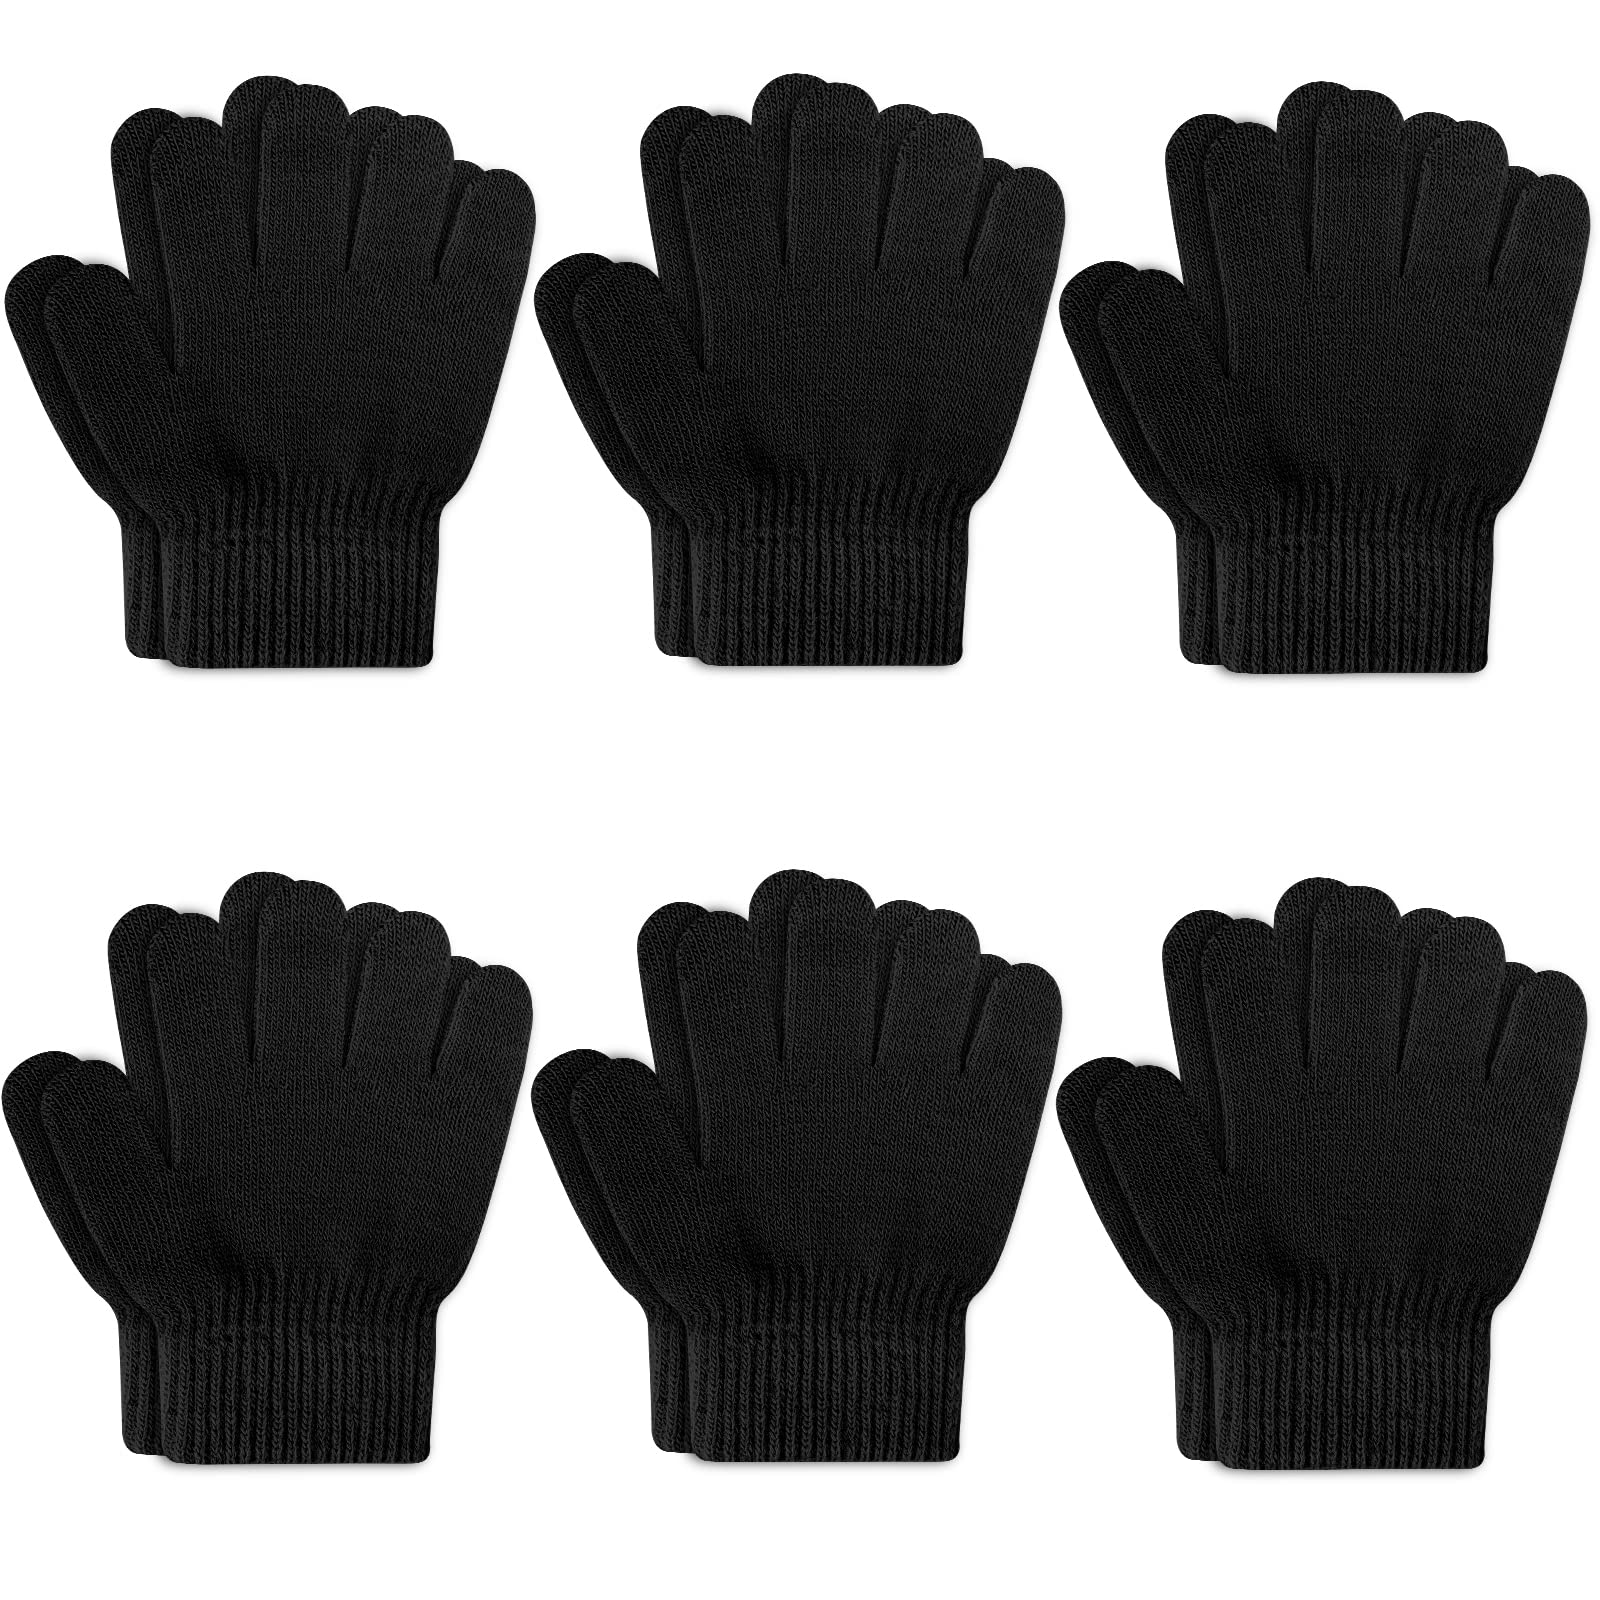 ONESINg 6 Pairs Kids gloves Knit gloves for Kids Winter gloves Stretchy Finger Boys gloves for girls Boys